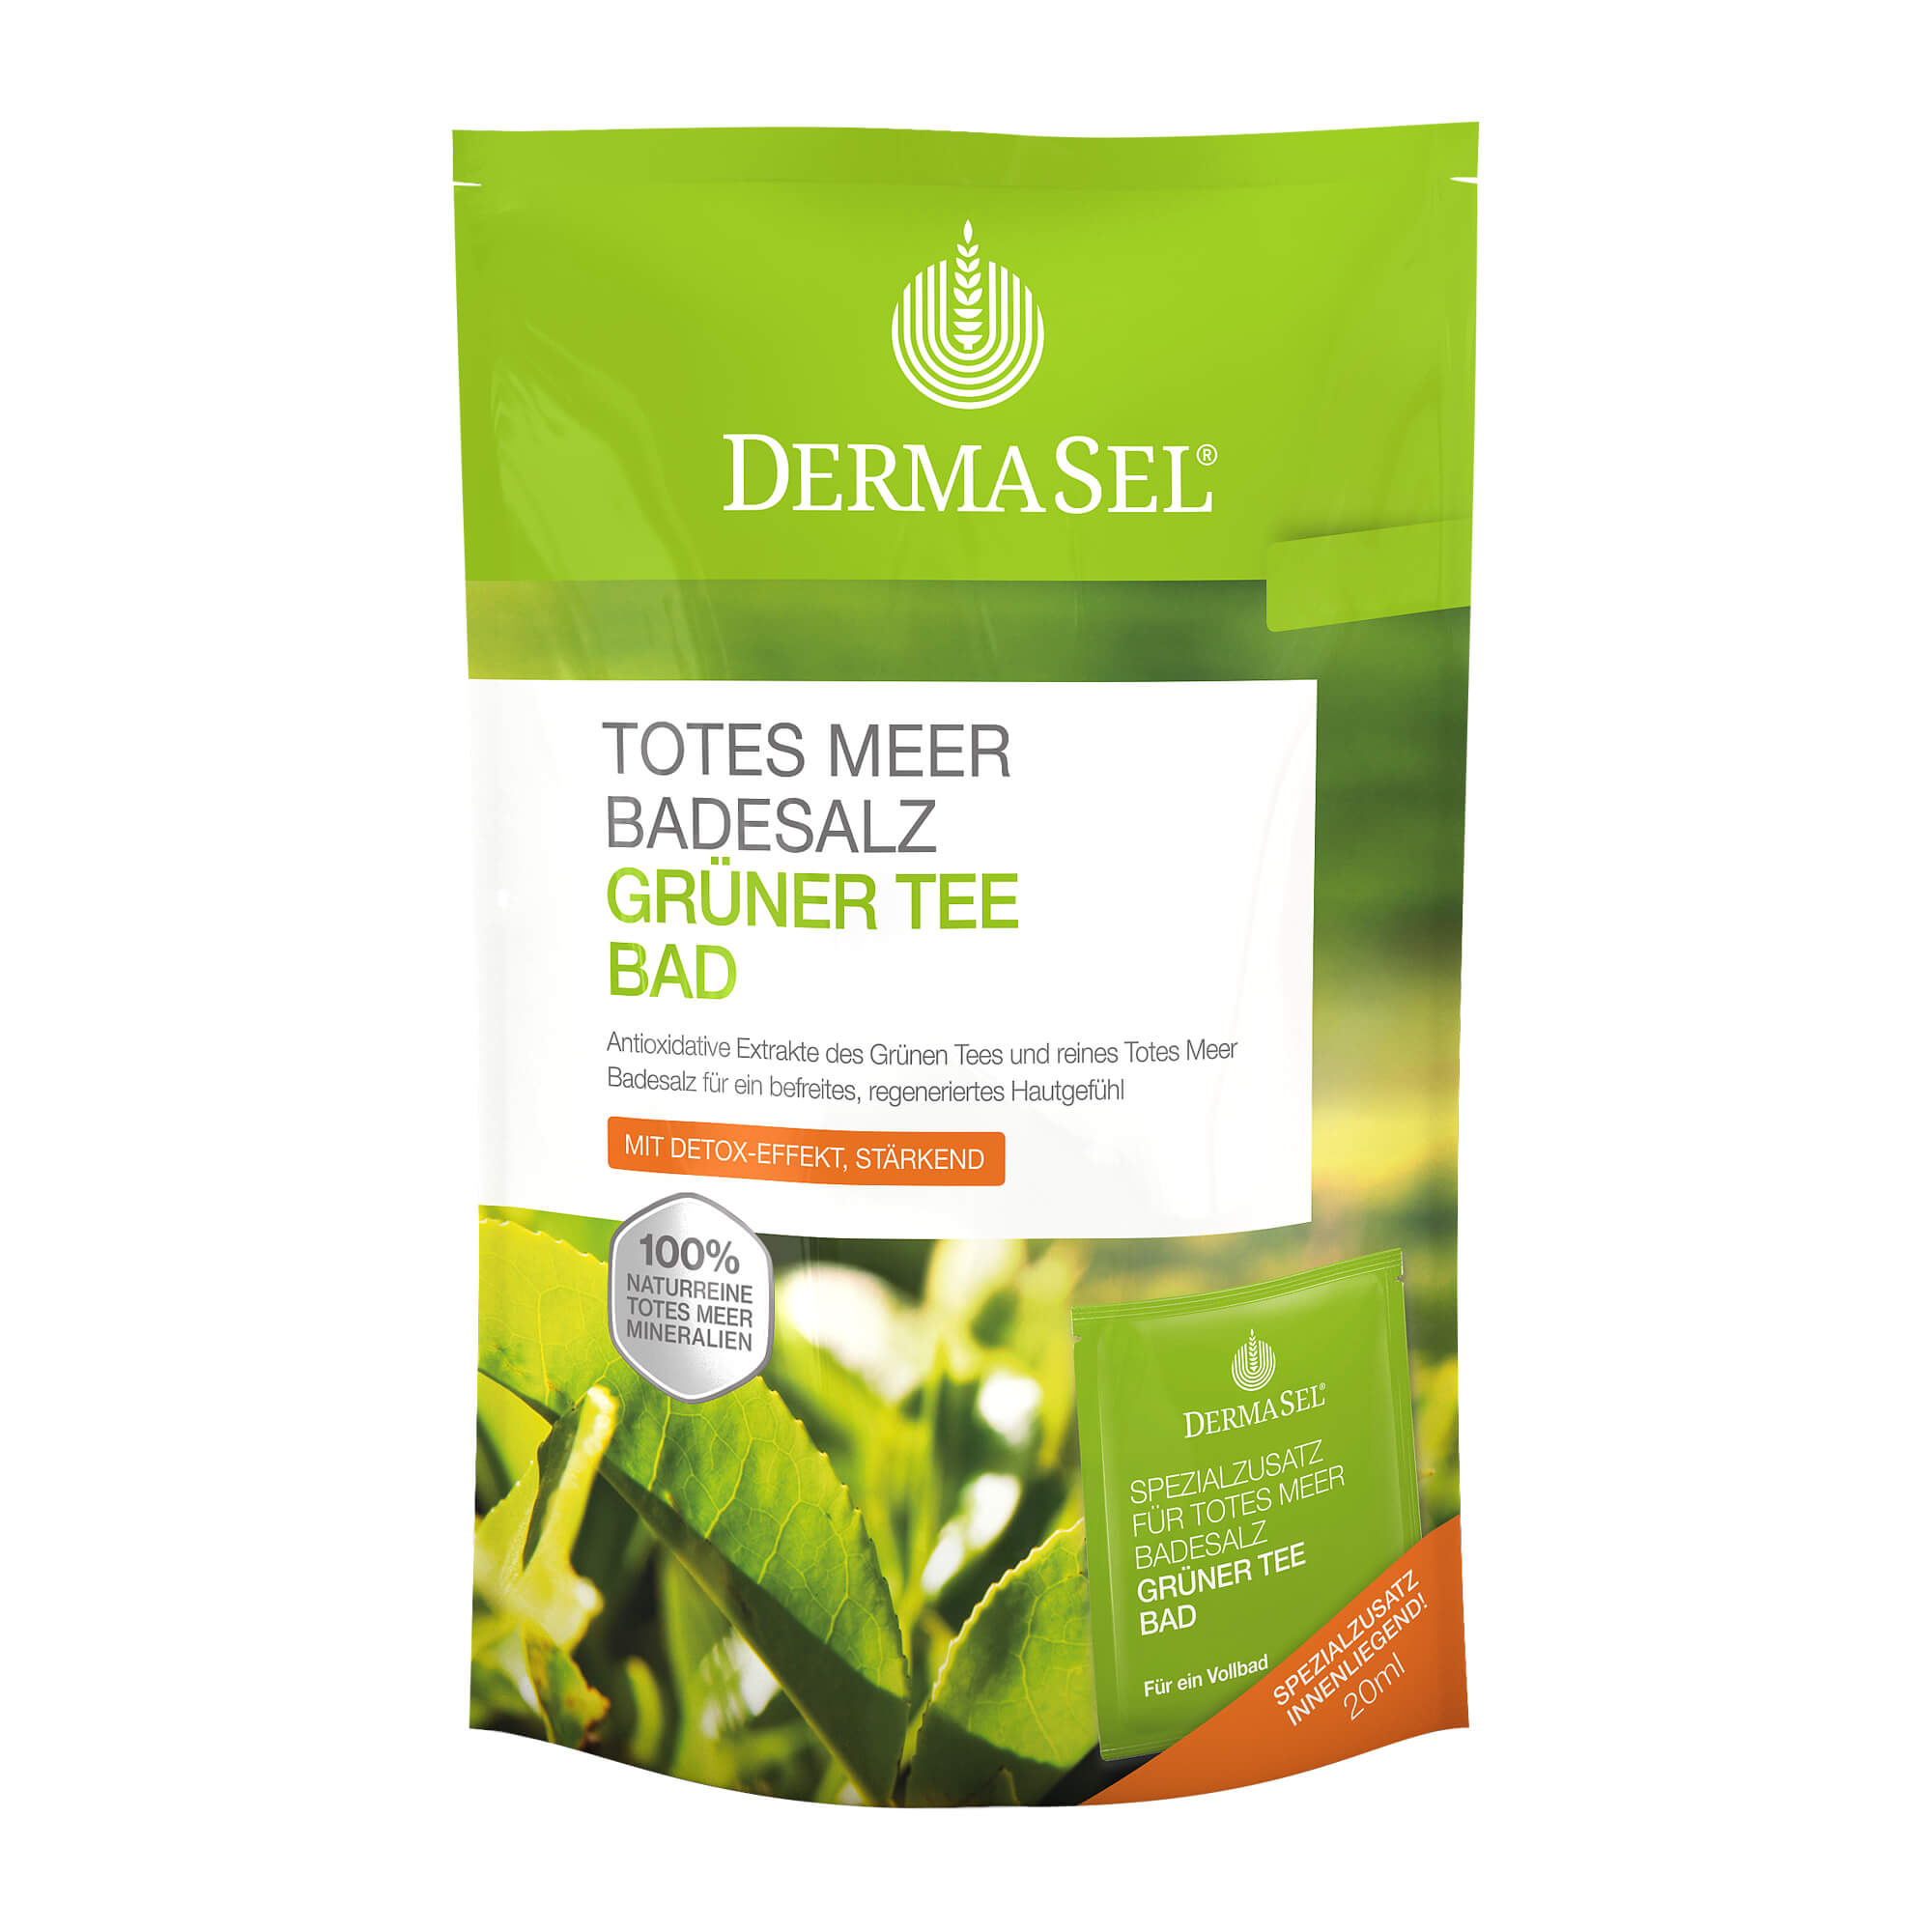 Der grüne Tee und das Salz des Toten Meers aktivieren den körpereigenen Entgiftungsprozess und regenerieren die Haut.